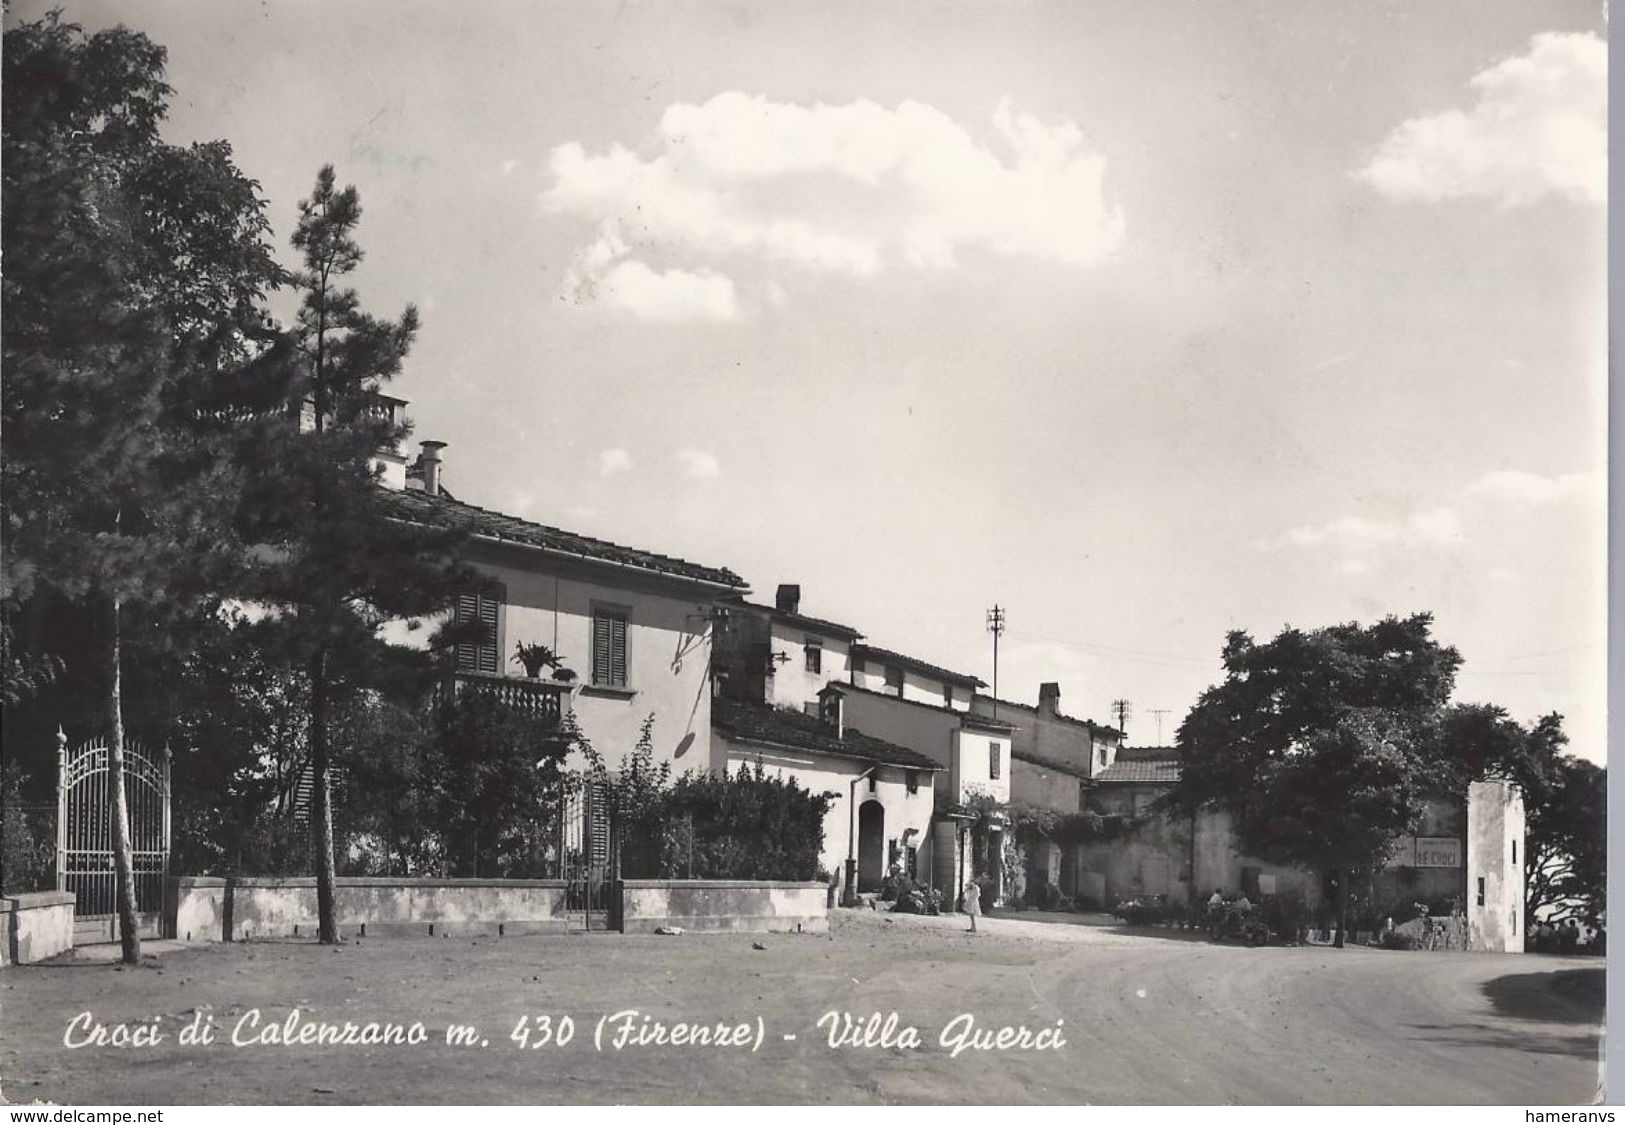 Croci Di Calenzano - Villa Querci - Firenze - H1731 - Firenze